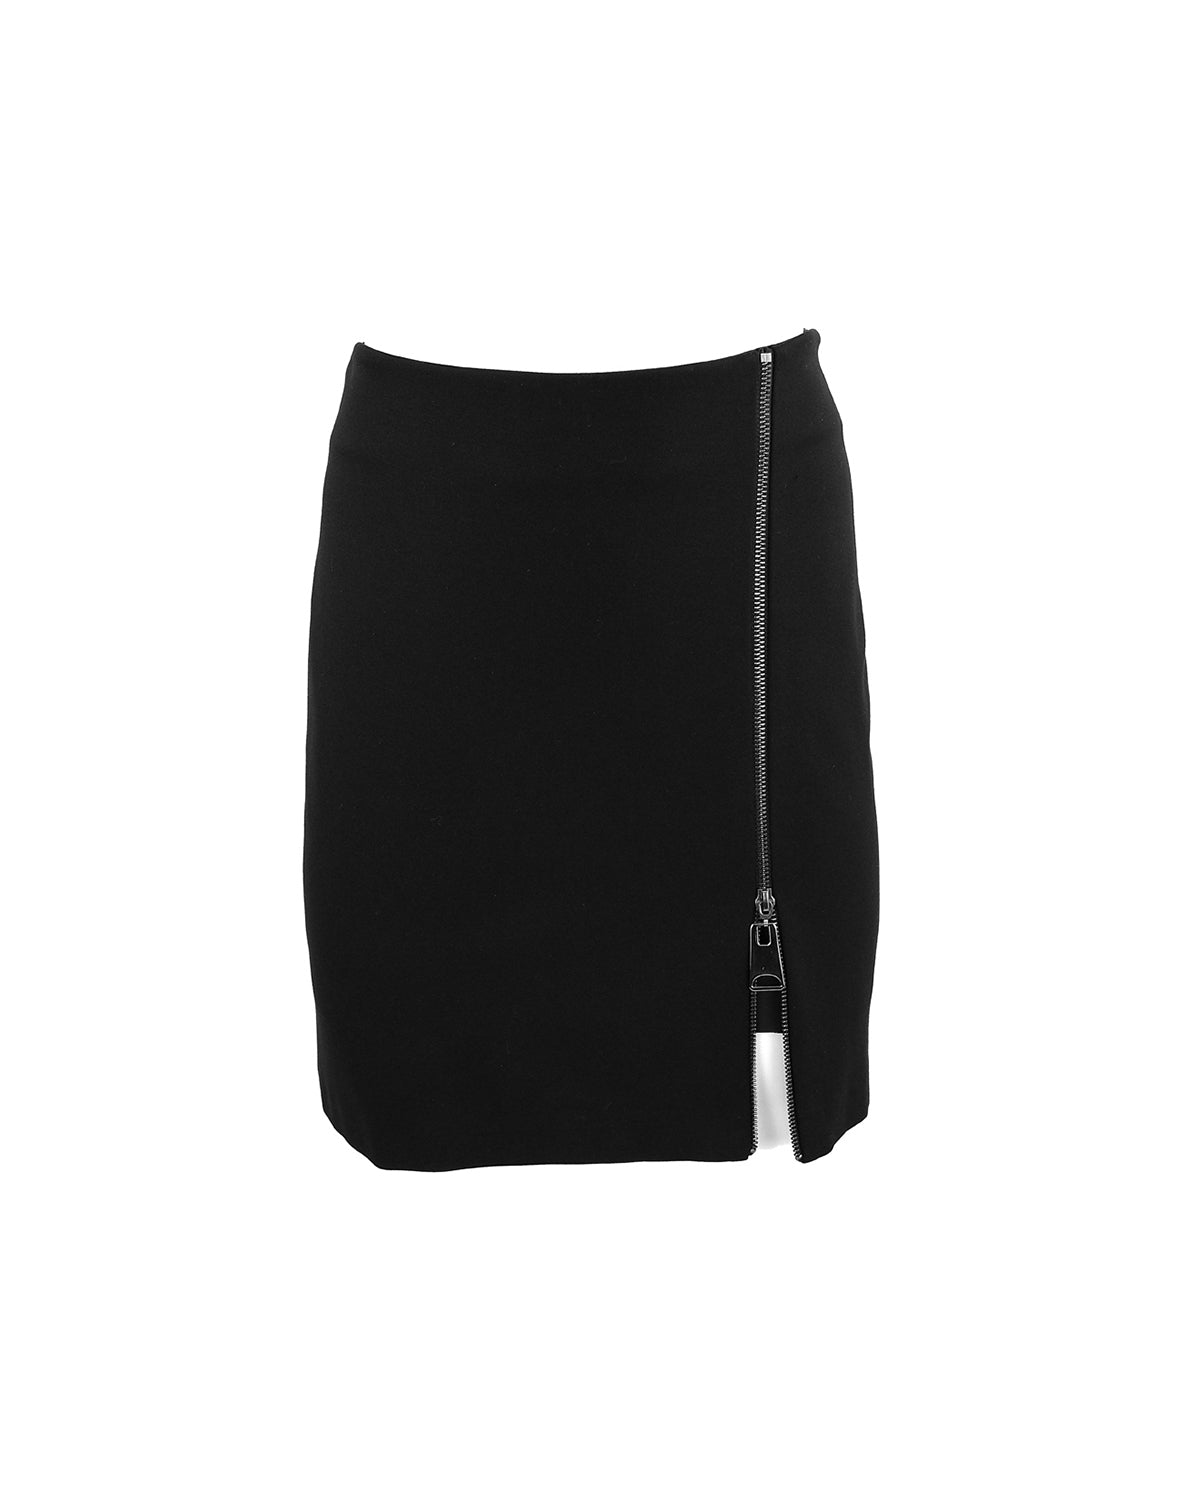 Hera Layered Vegan Leather Mini Skirt